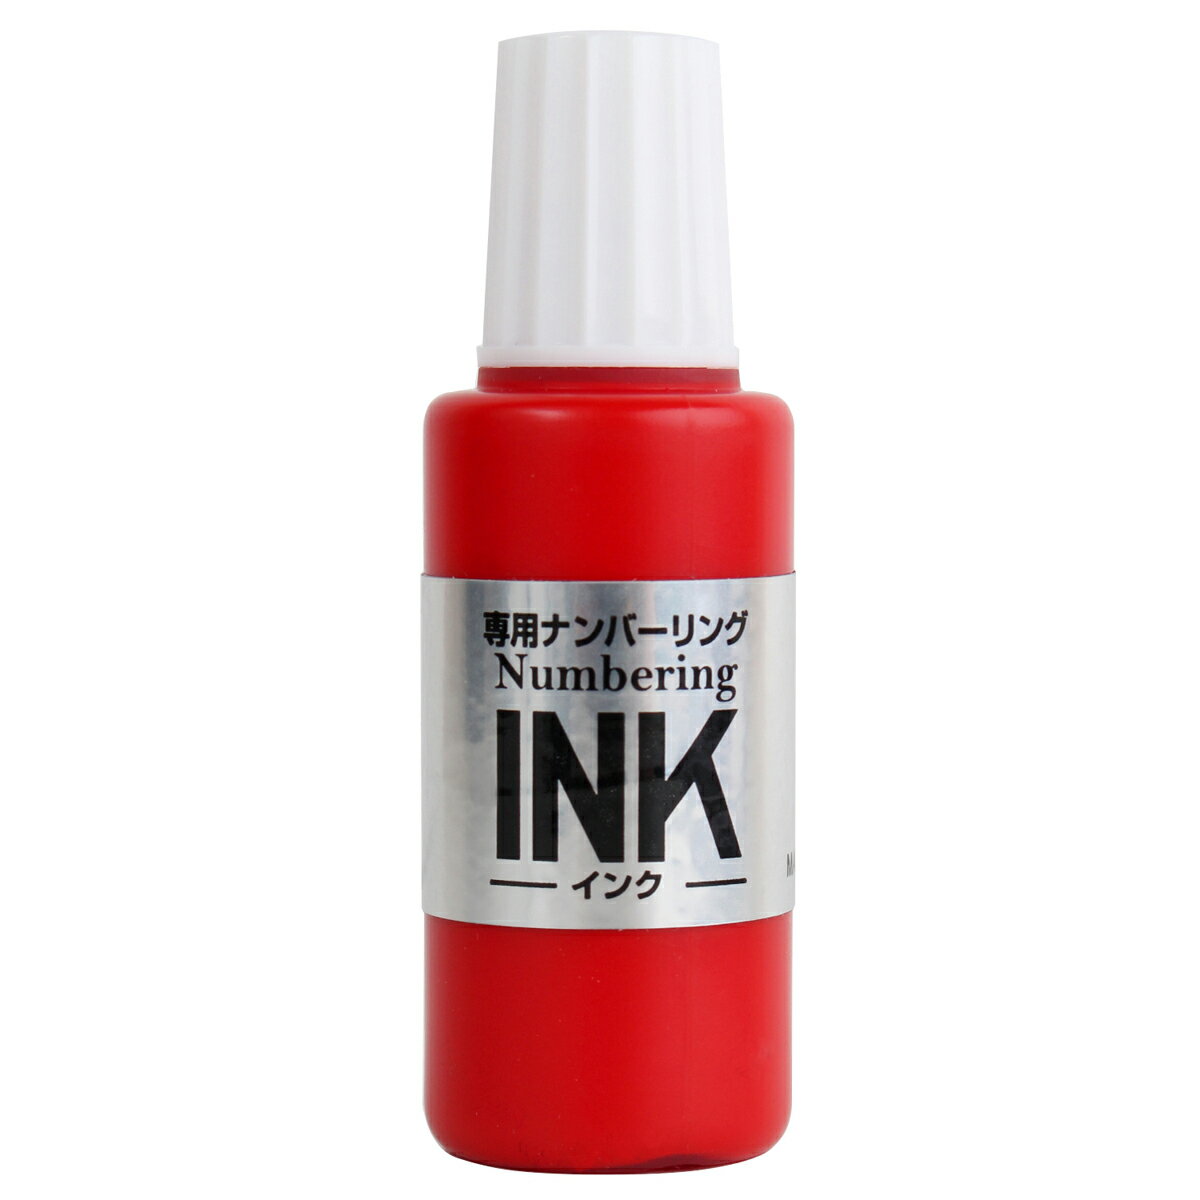 【PLUS】 ナンバーリング用インク レッド IJ-900(30798) プラス